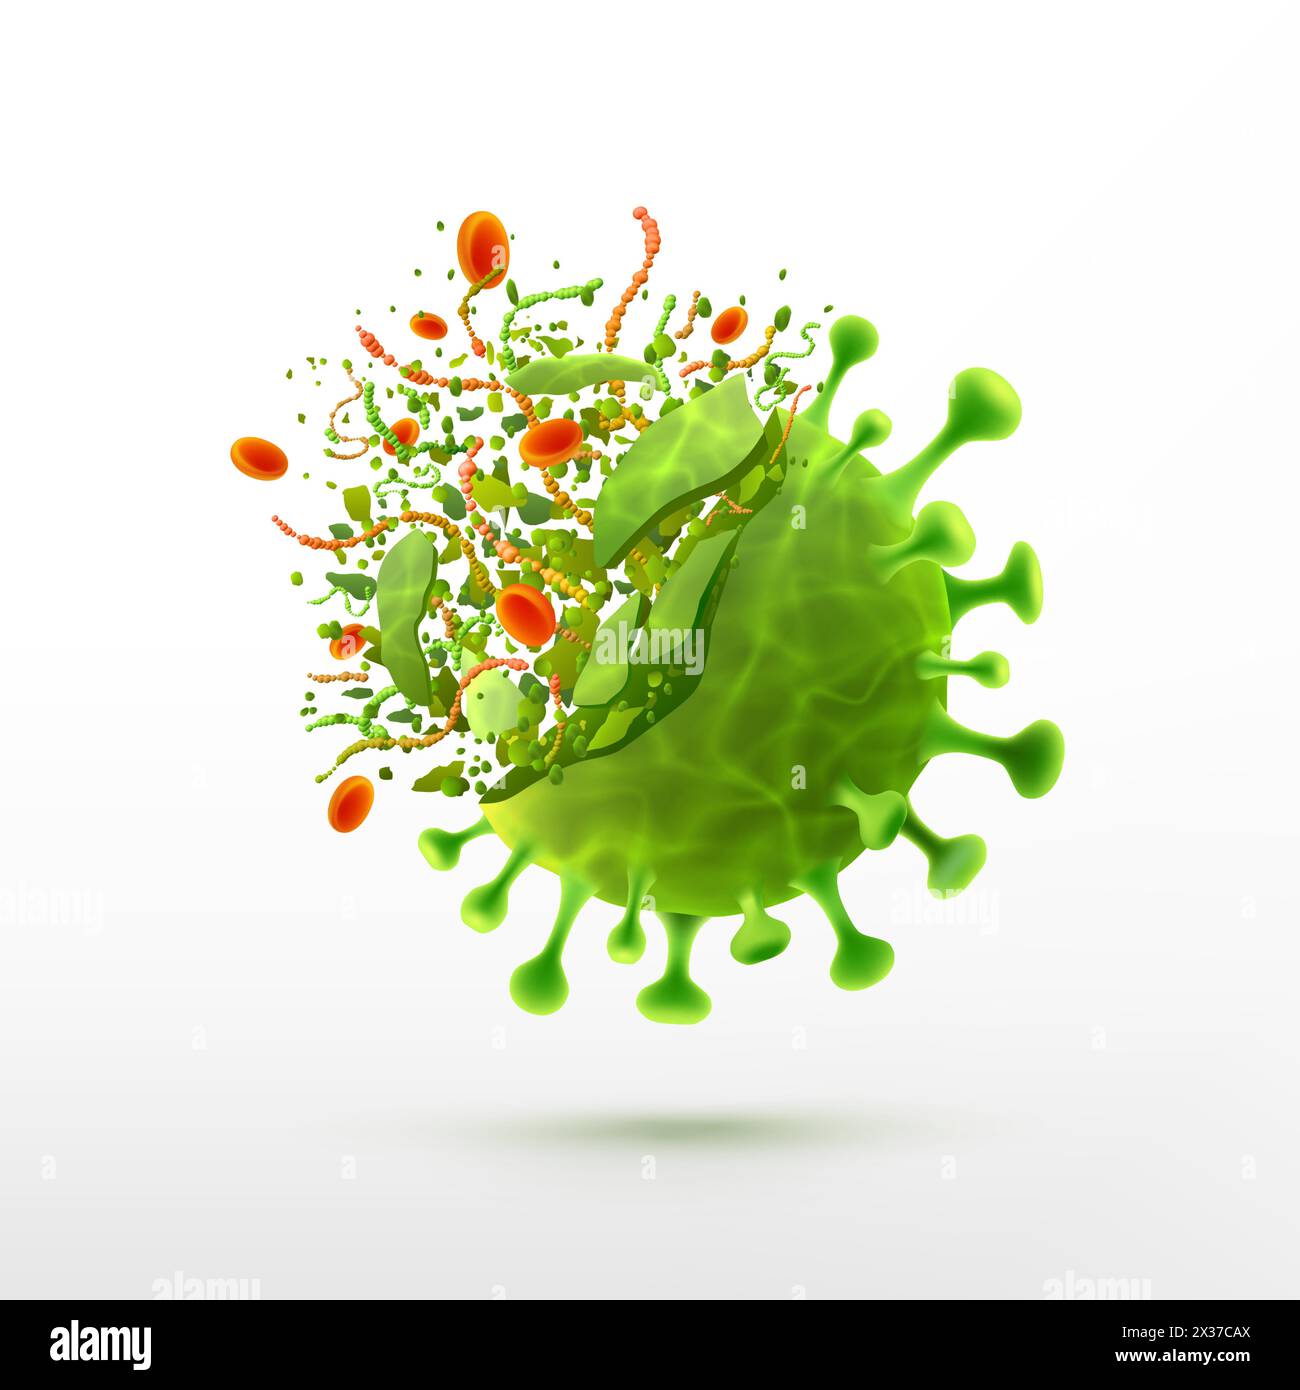 Vecteur de destruction de virus sur fond blanc.bactéries germes micro-organisme cellule de virus.Corona virus SARS COV 2,2019 nCoV concept de destruction de virus.CO Illustration de Vecteur